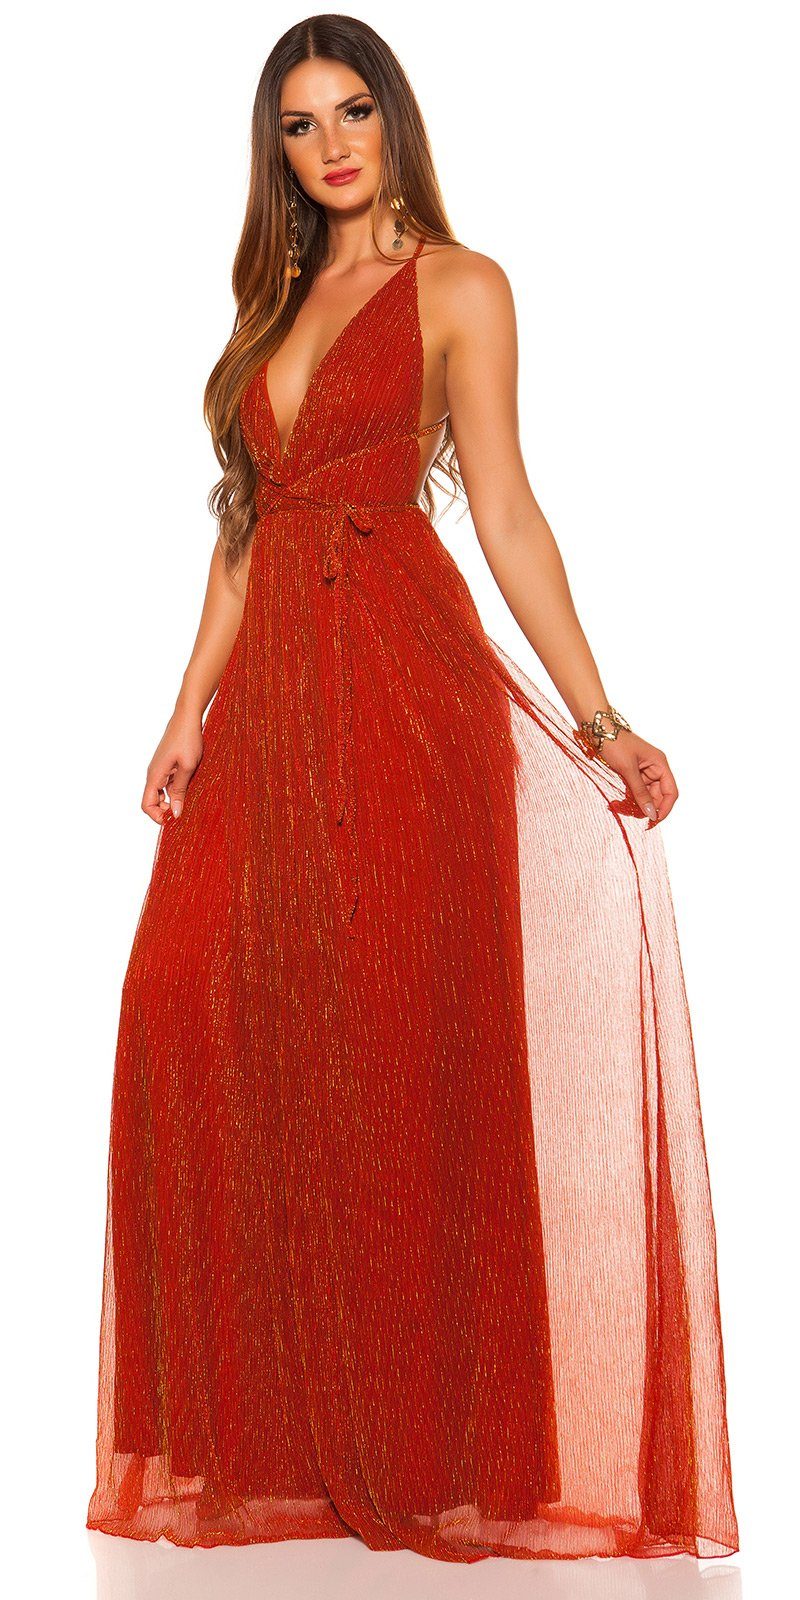 Koucla Abendkleid Maxikleid mit offenem Rücken glänzendes, Plissee Plissee-Stil im glitzerndes Material, rotgold